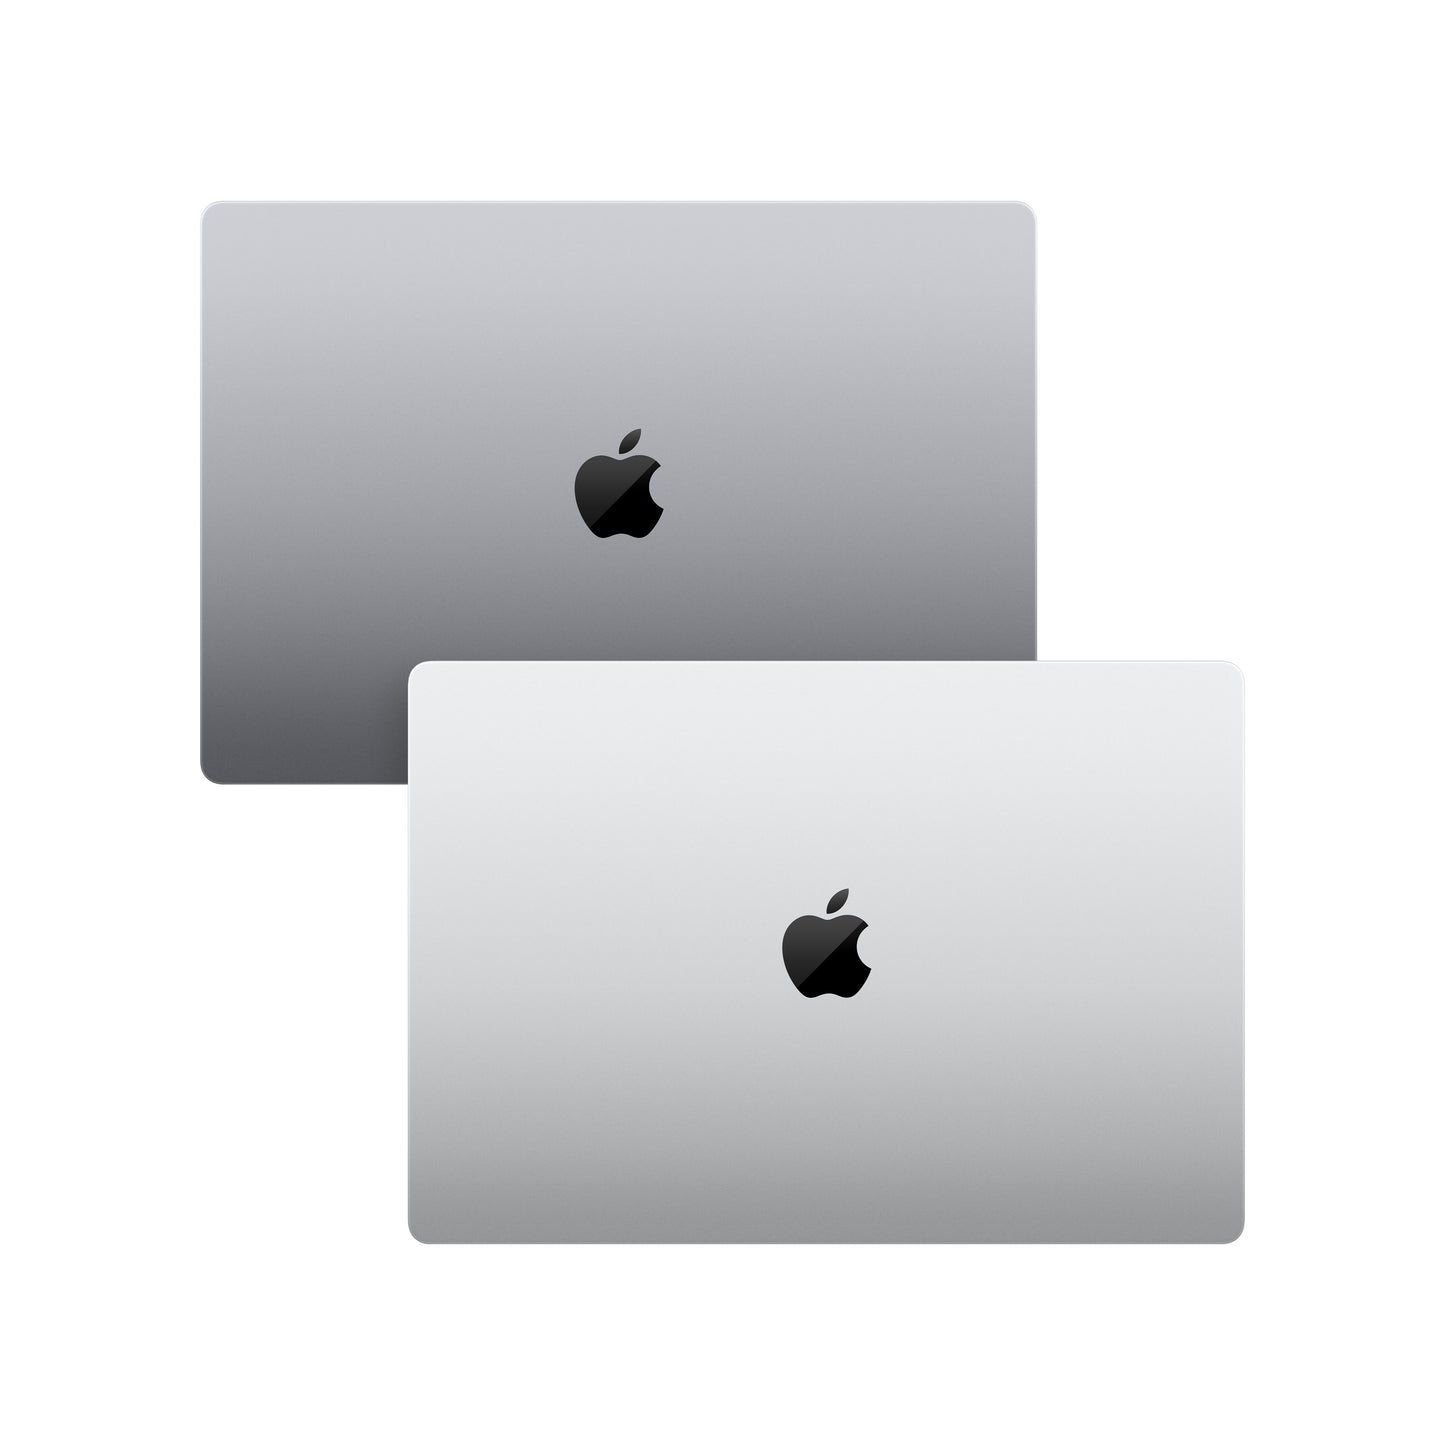 MacBook Pro de 16 pulgadas Chip M1 Max de Apple con CPU de diez núcleos y GPU de treinta y dos núcleos